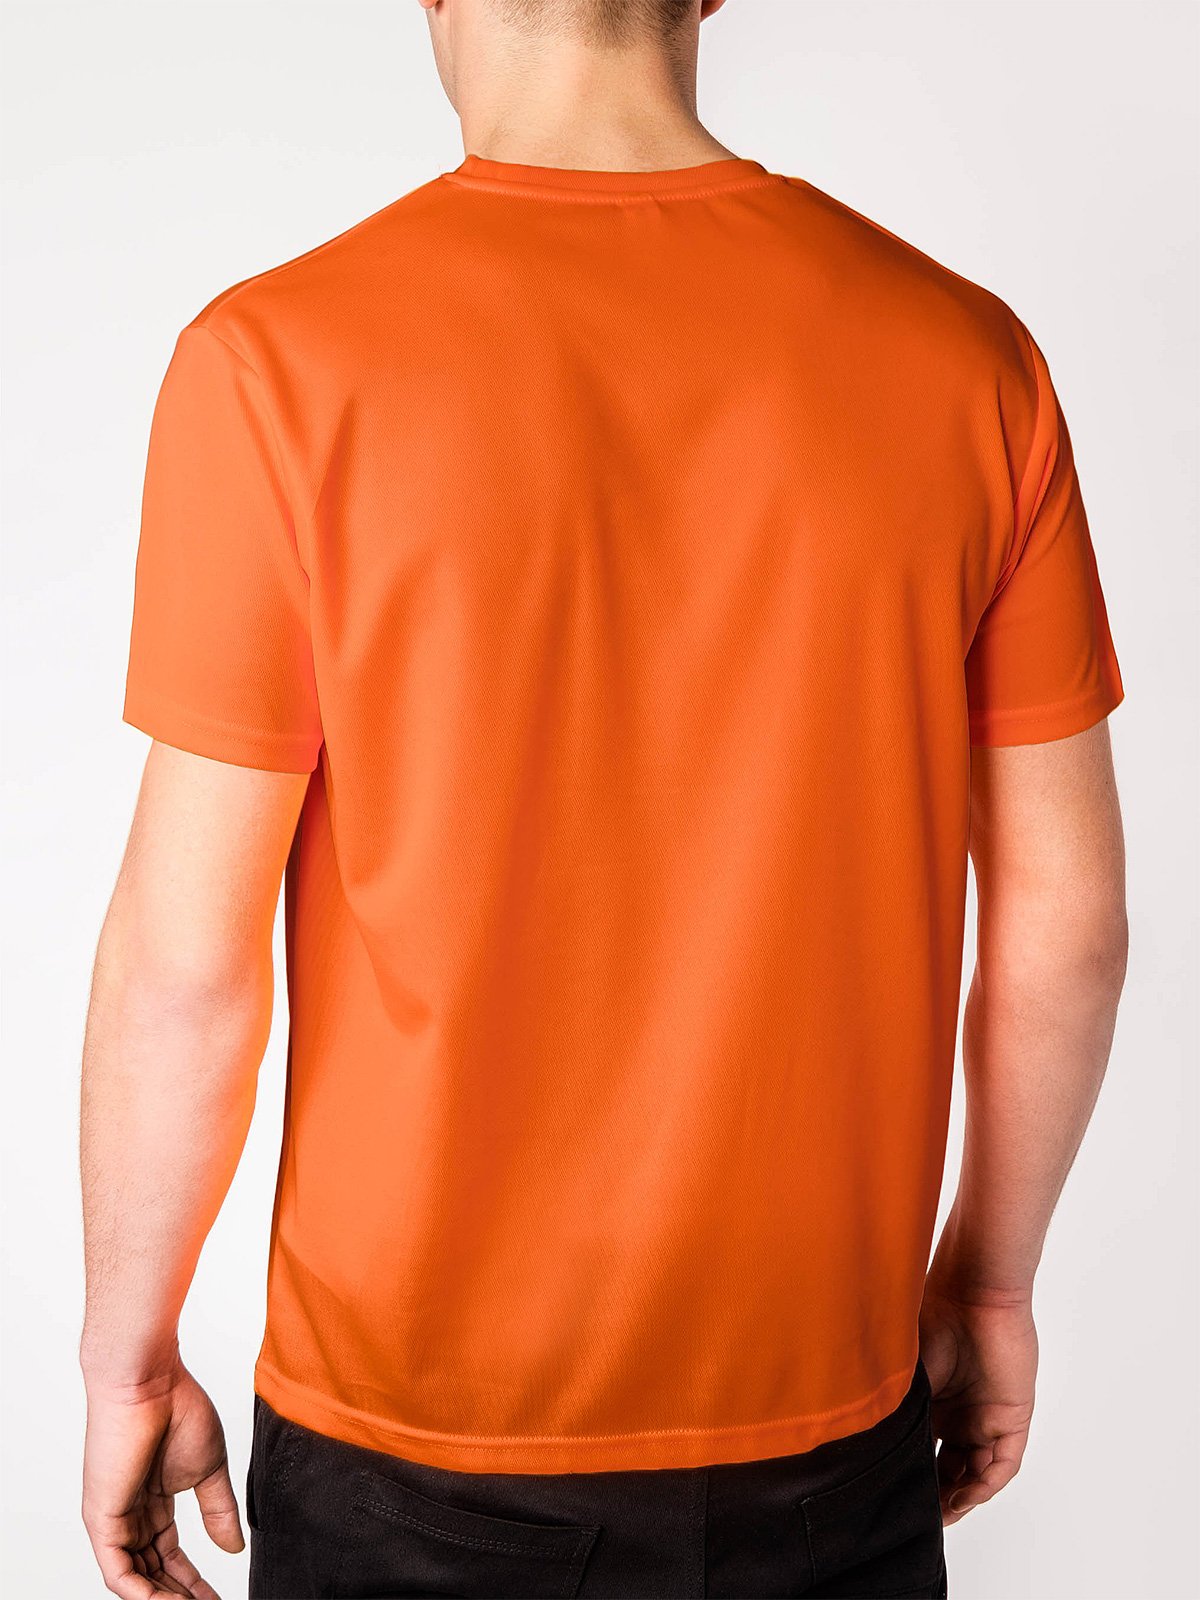 orange t shirt mens